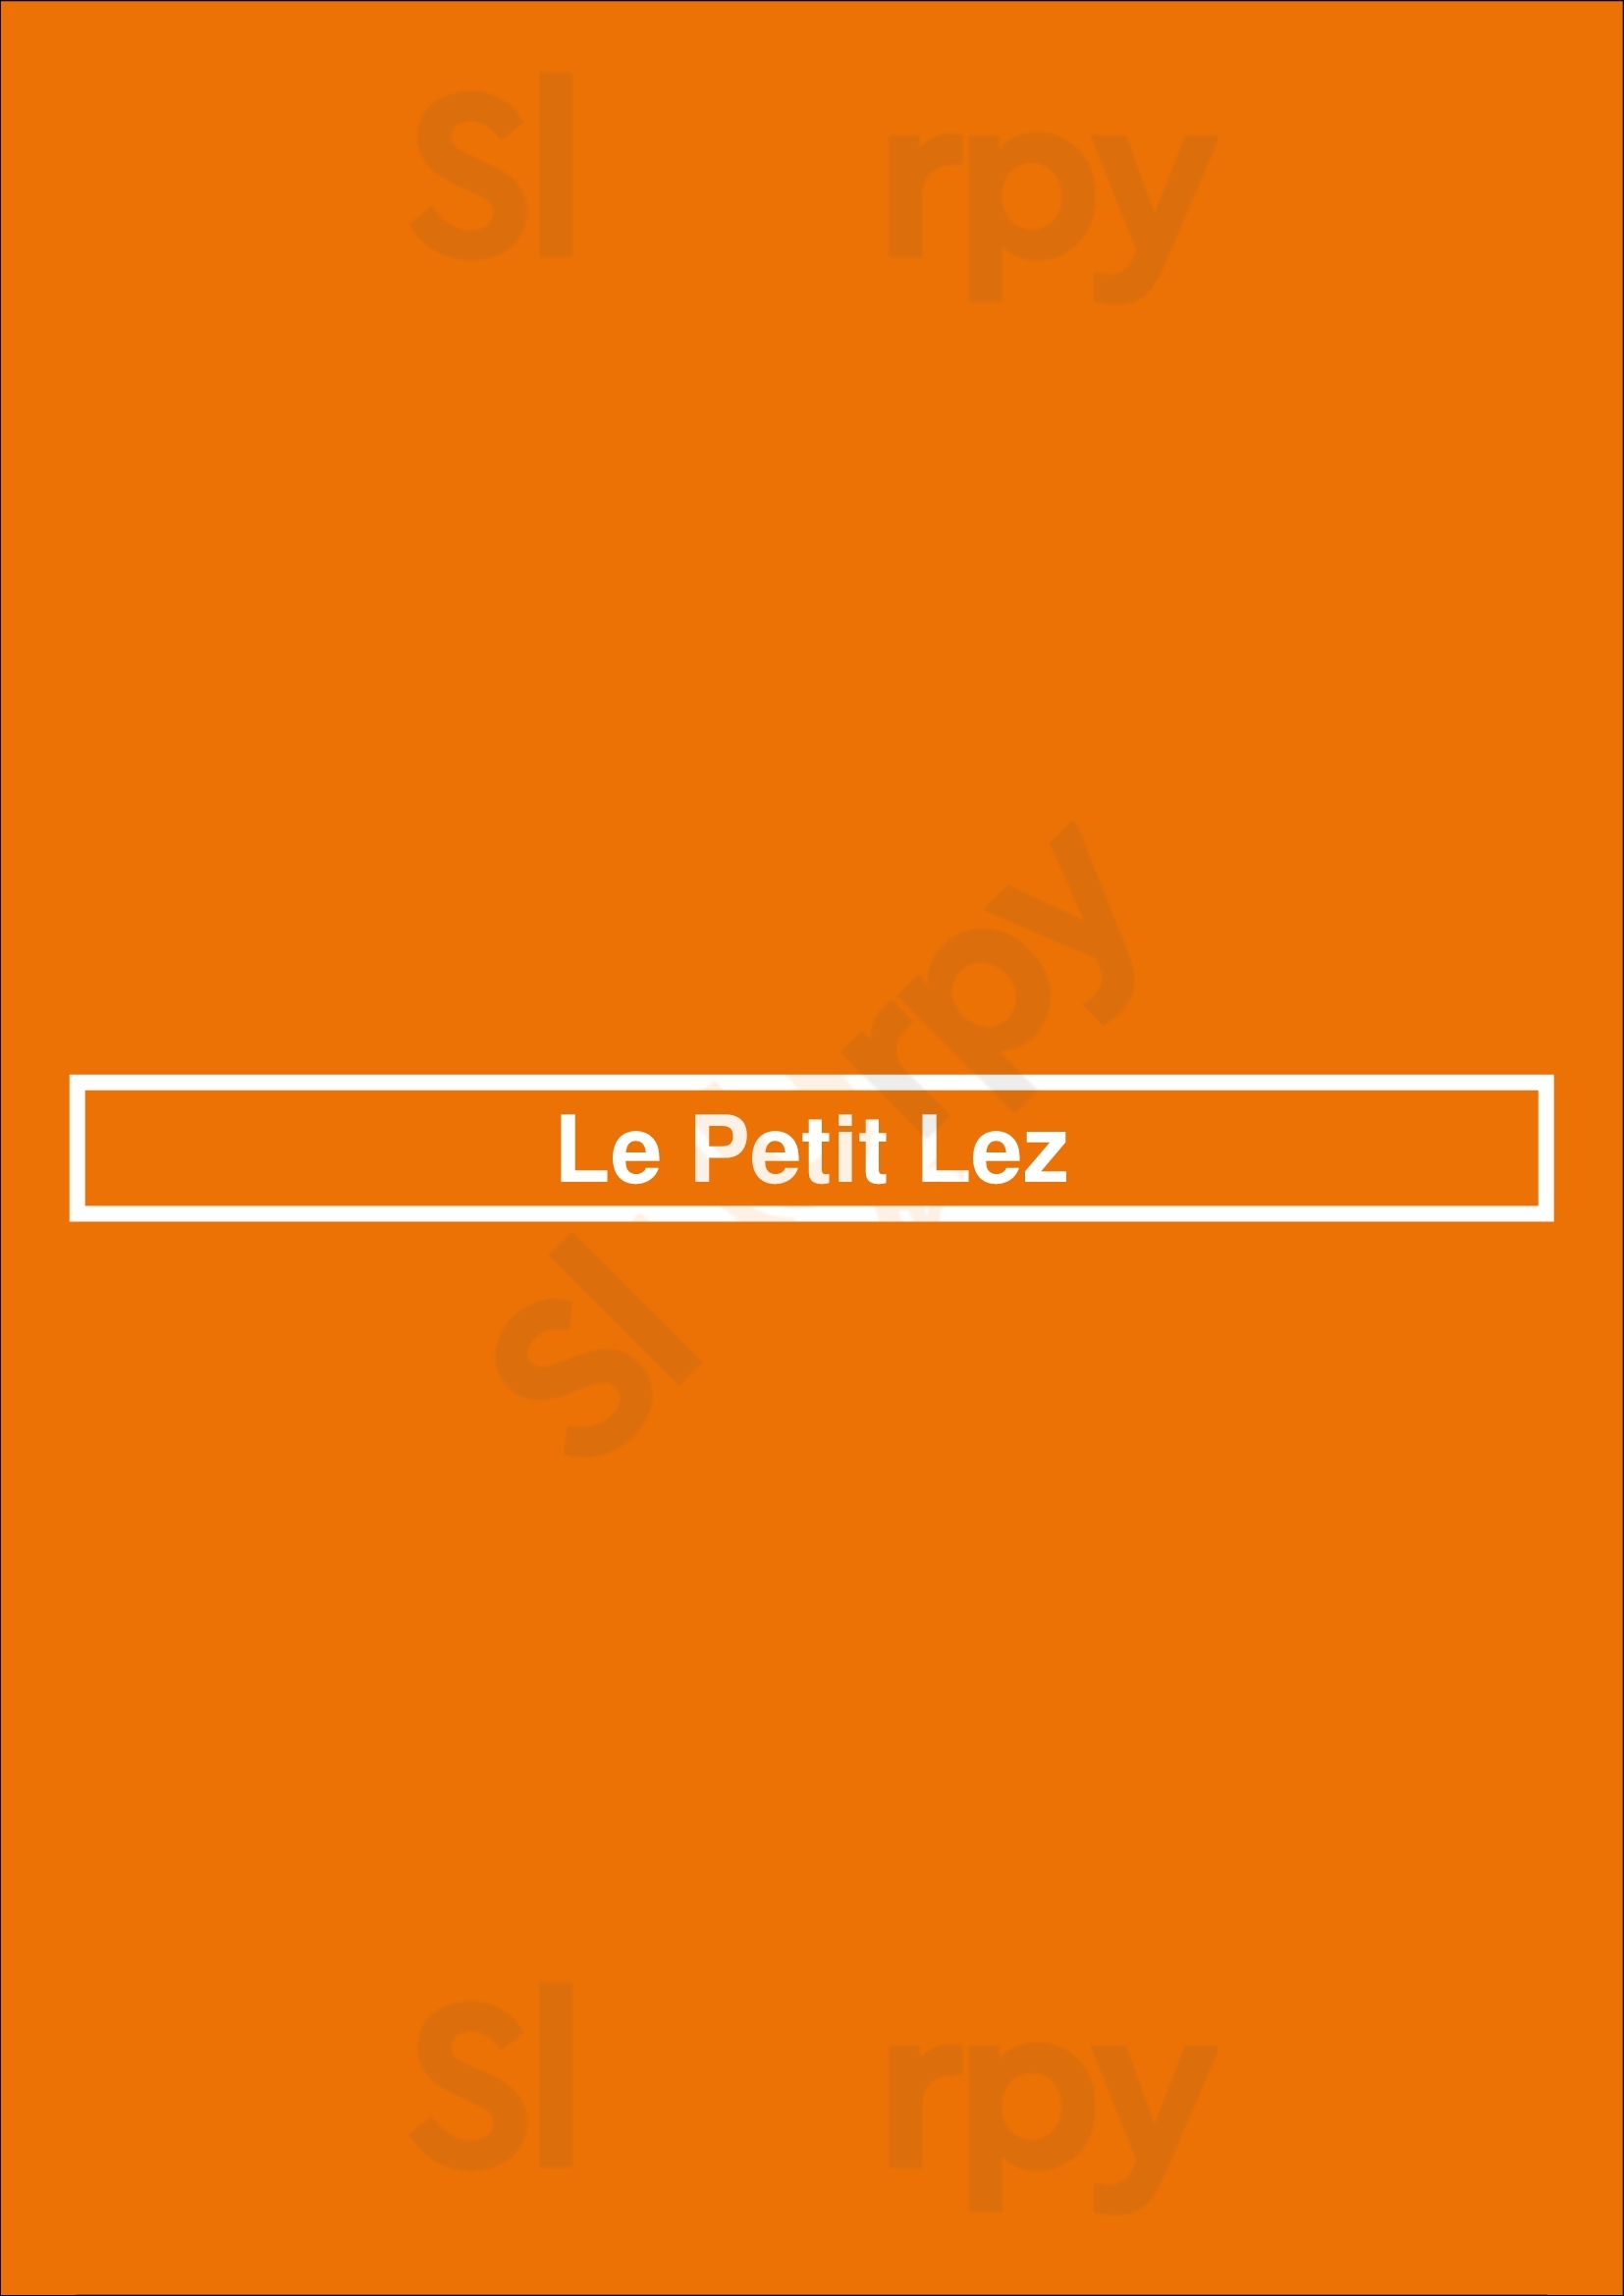 Le Petit Lez Montpellier Menu - 1